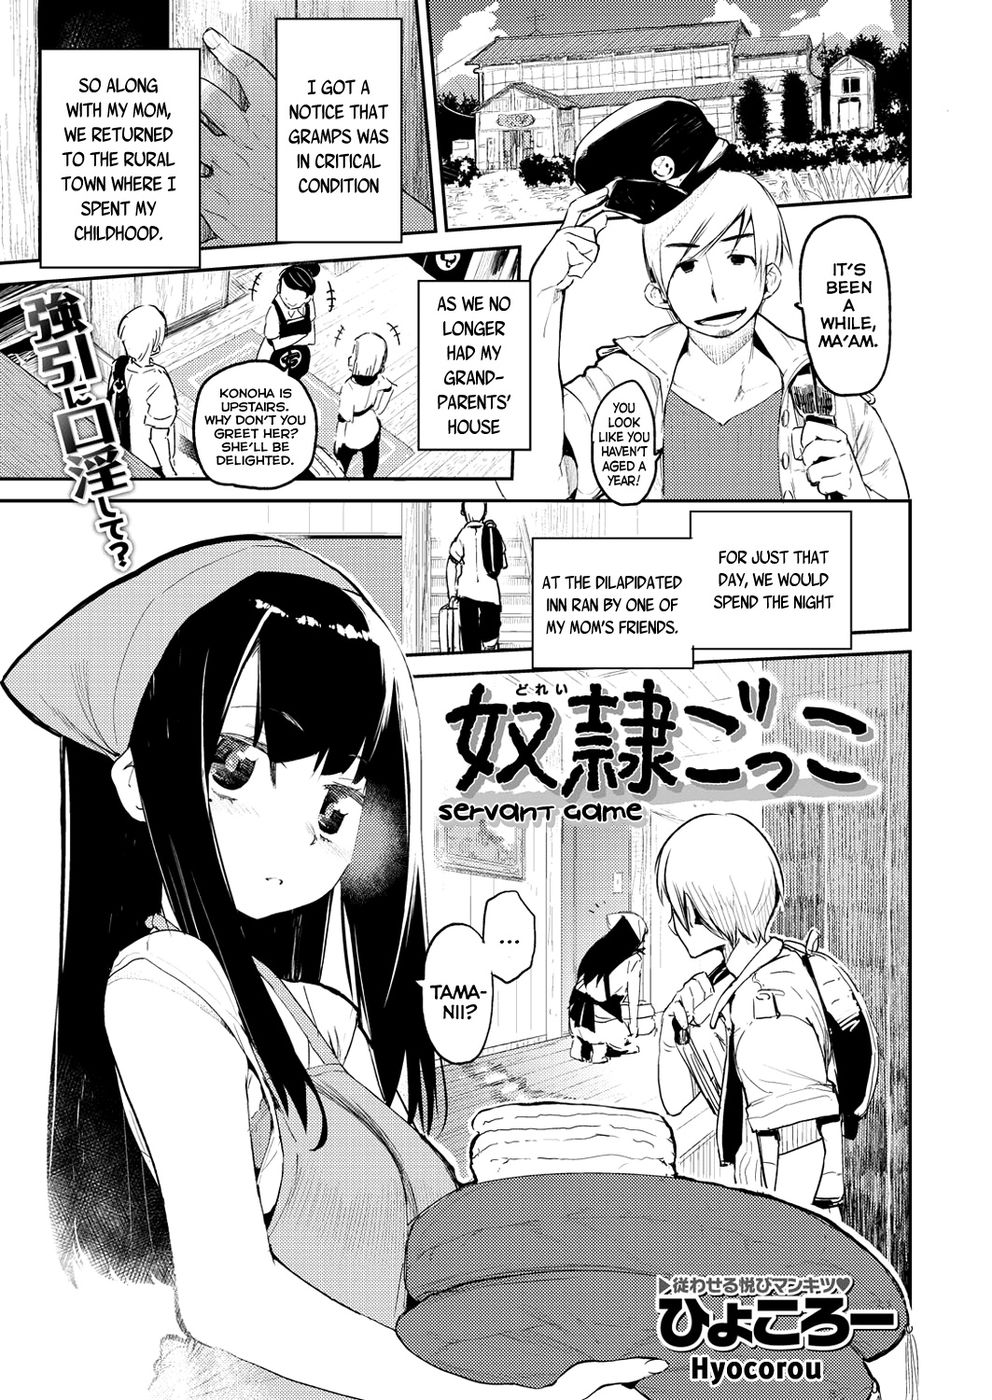 Hentai Manga Comic-Servant Game-Read-1